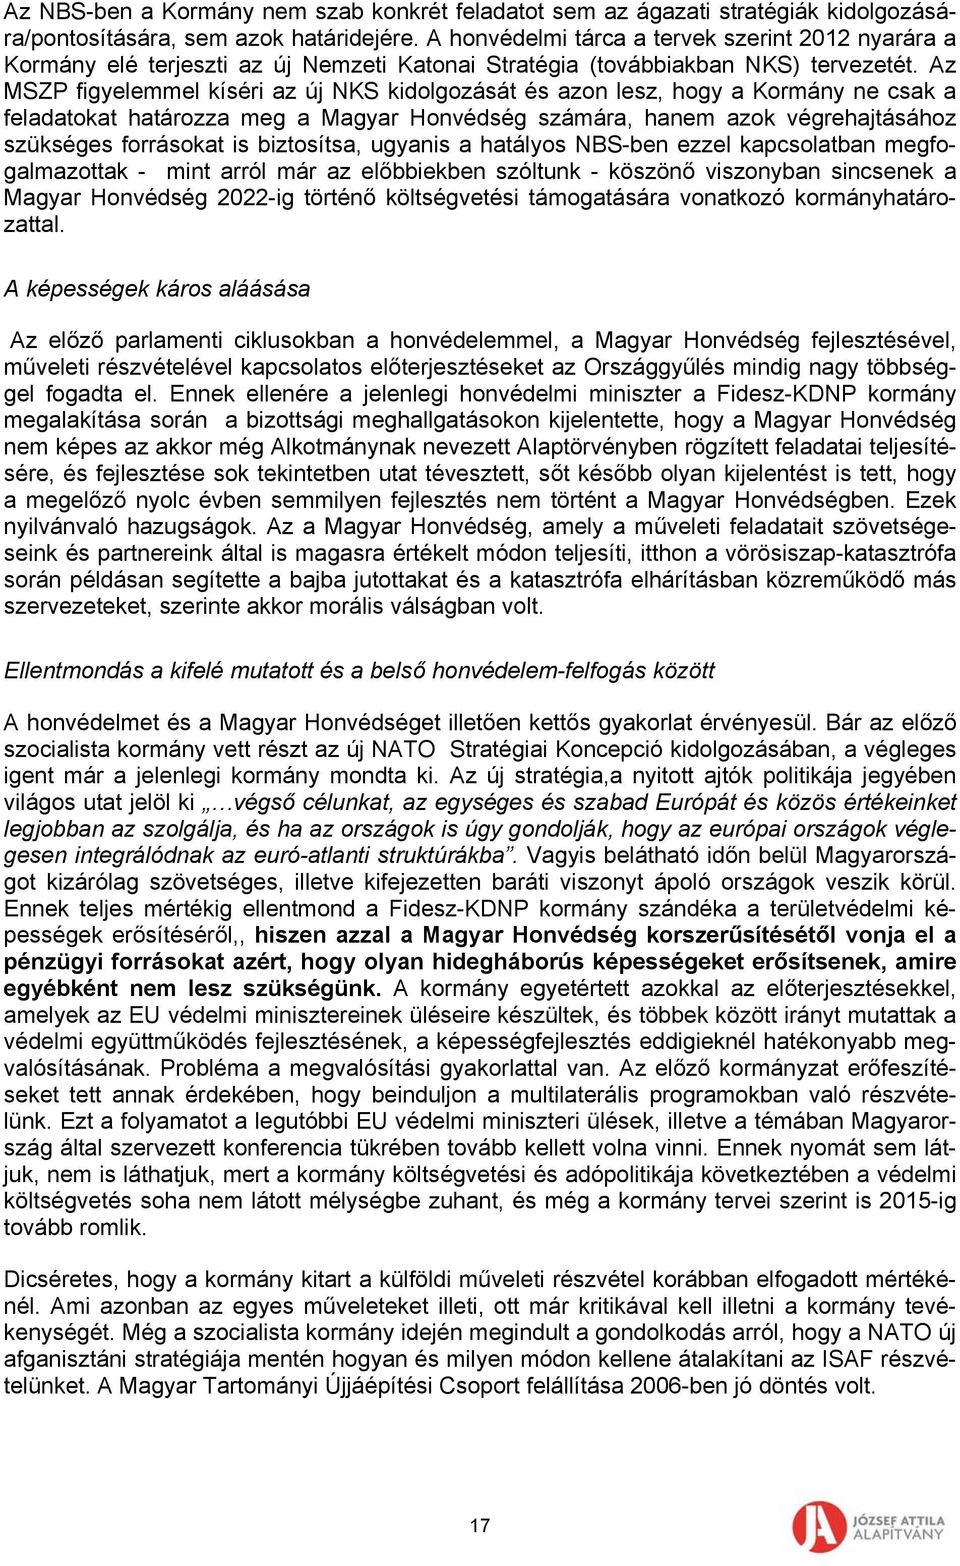 Az MSZP figyelemmel kíséri az új NKS kidolgozását és azon lesz, hogy a Kormány ne csak a feladatokat határozza meg a Magyar Honvédség számára, hanem azok végrehajtásához szükséges forrásokat is